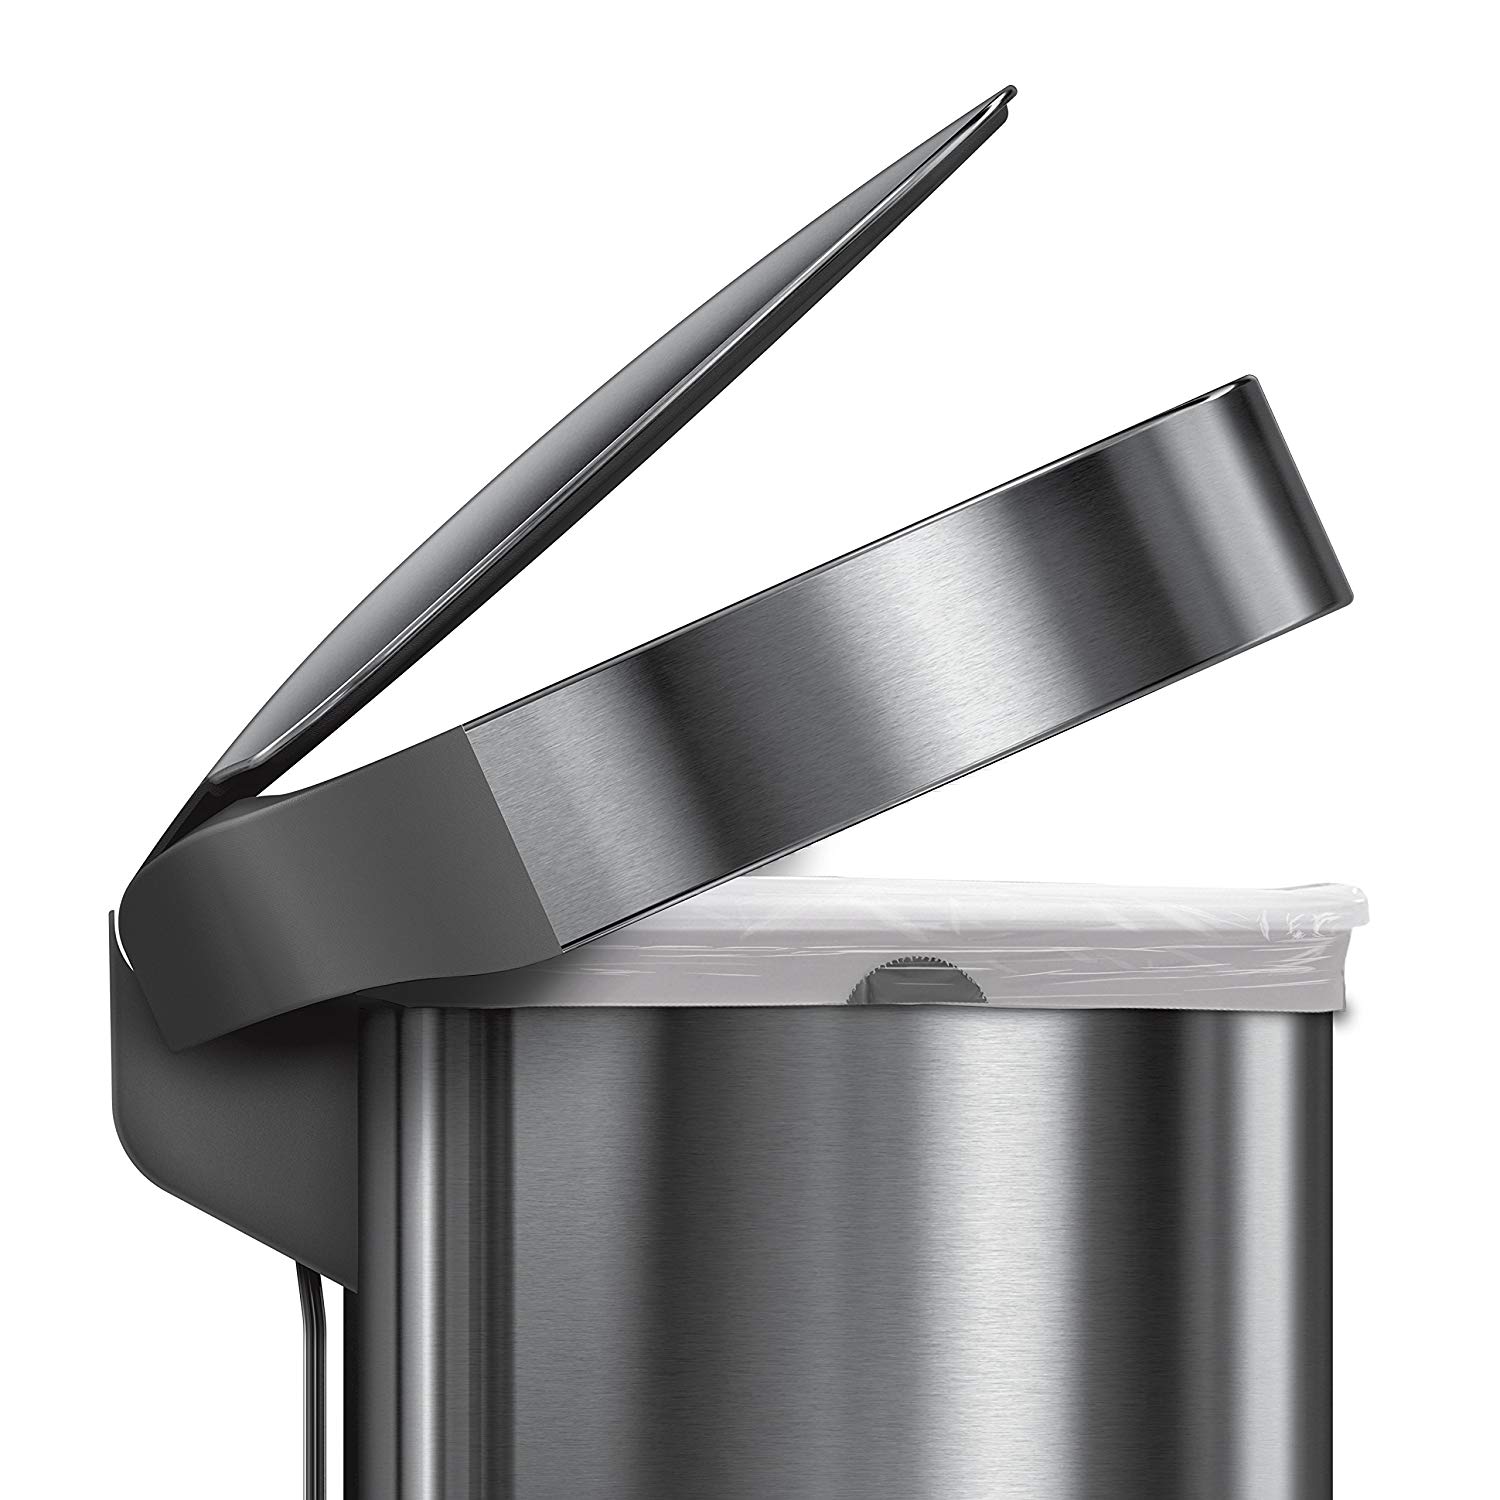 פח אשפה למטבח חצי עגול למטבח  45 ליטר דגם  Simplehuman - CW2030  - סימפליומן